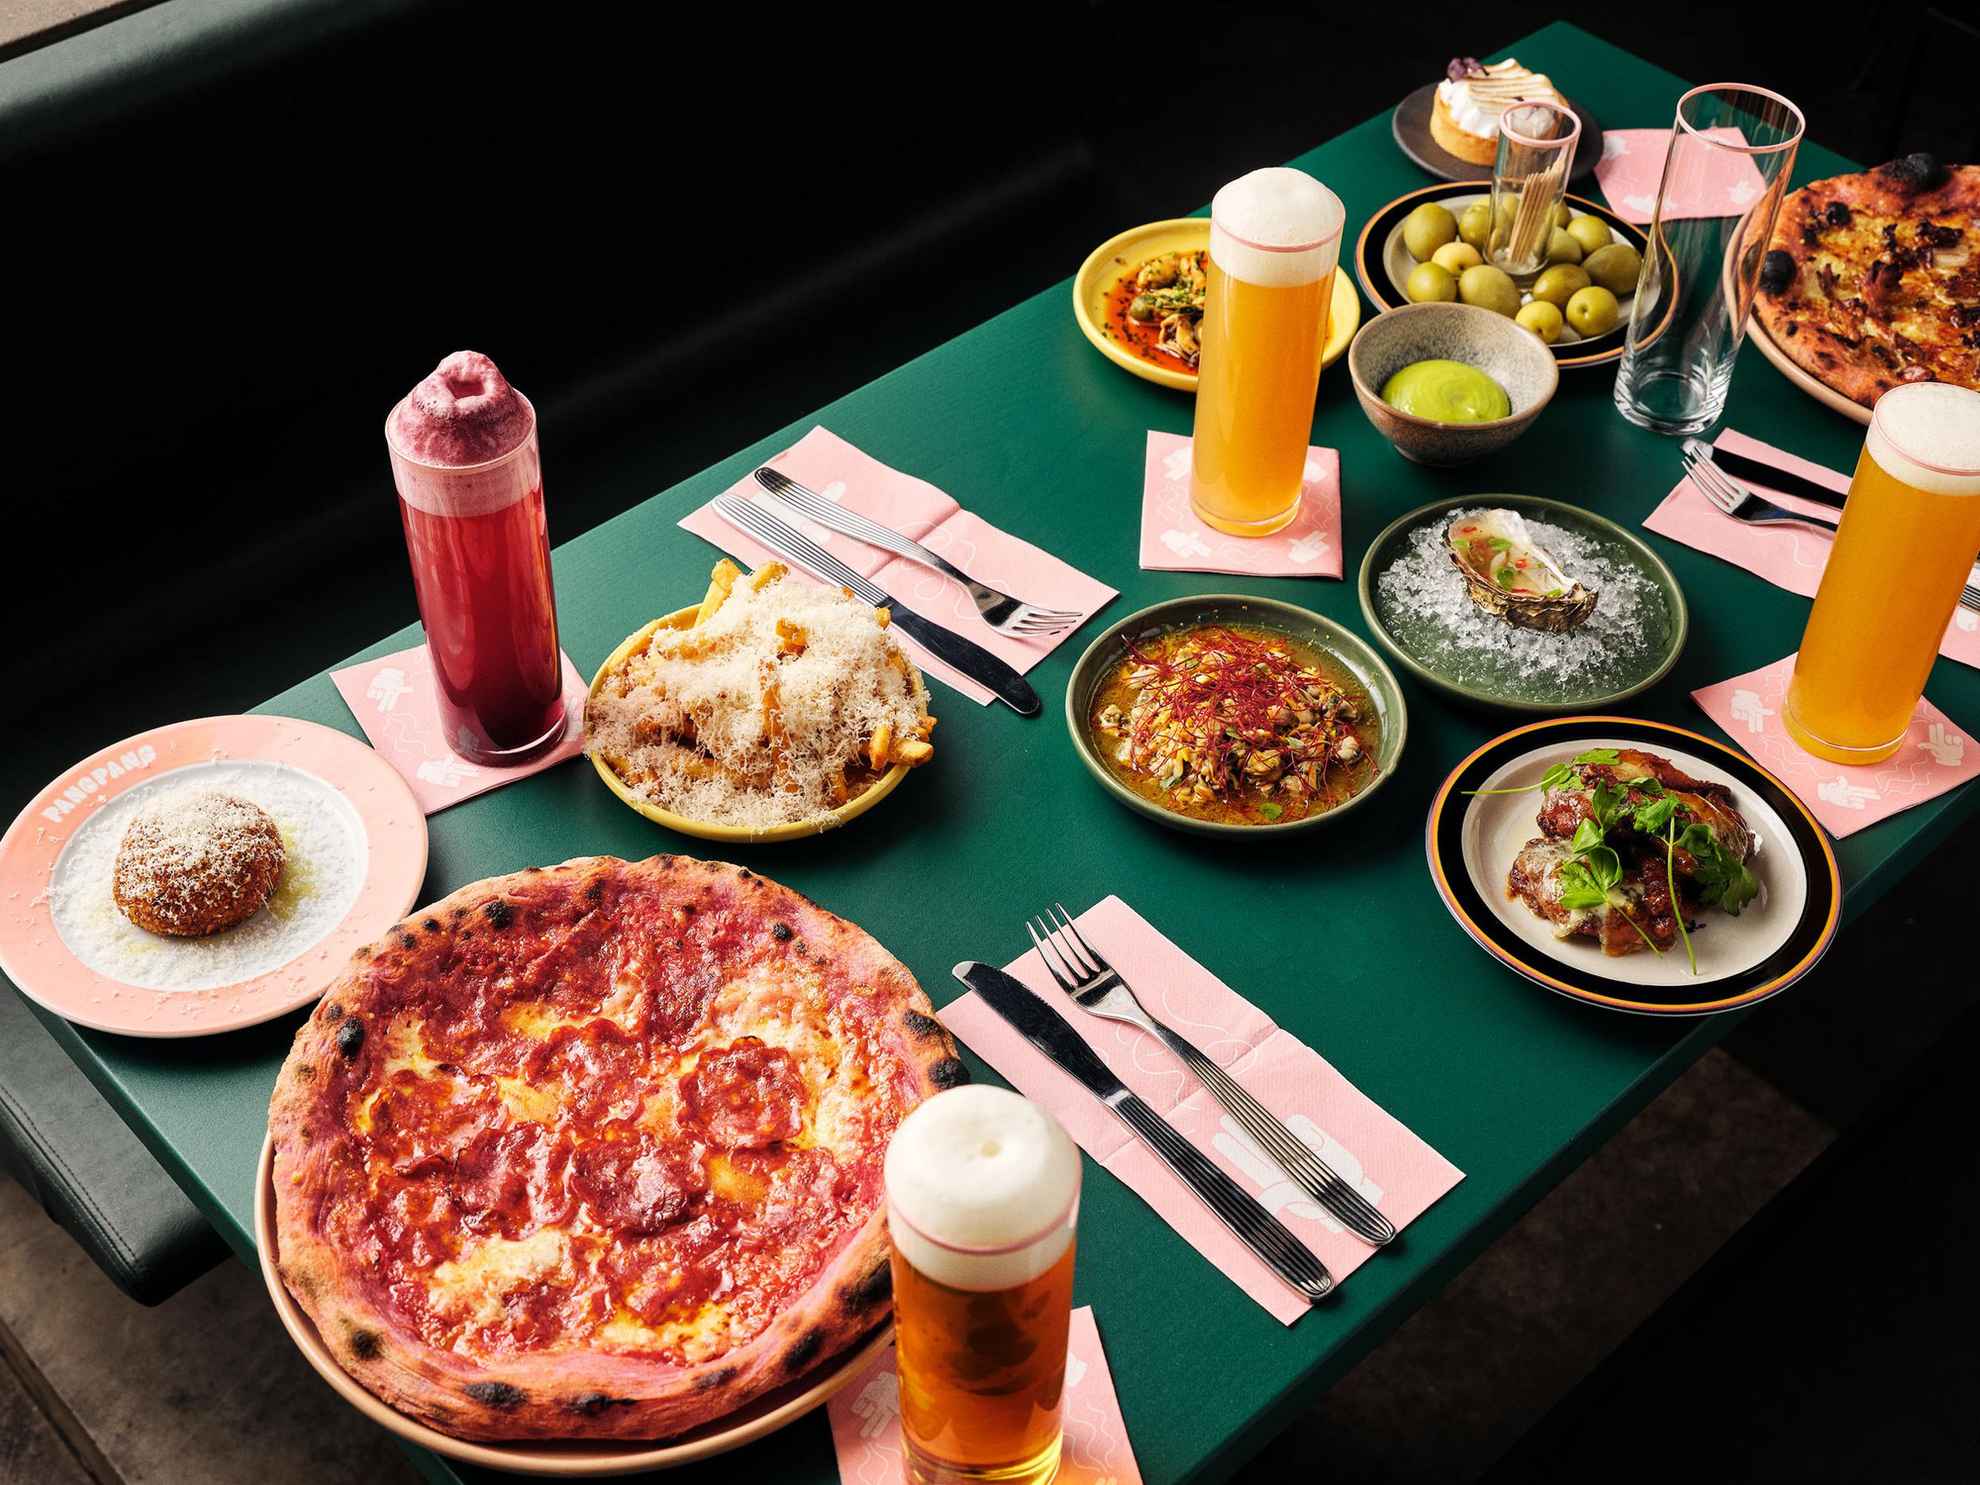 Une table verte sur laquelle sont disposés des couverts, des verres remplis de bière et des assiettes de nourriture avec par exemple des pizzas, des frites, des huitres et des olives.